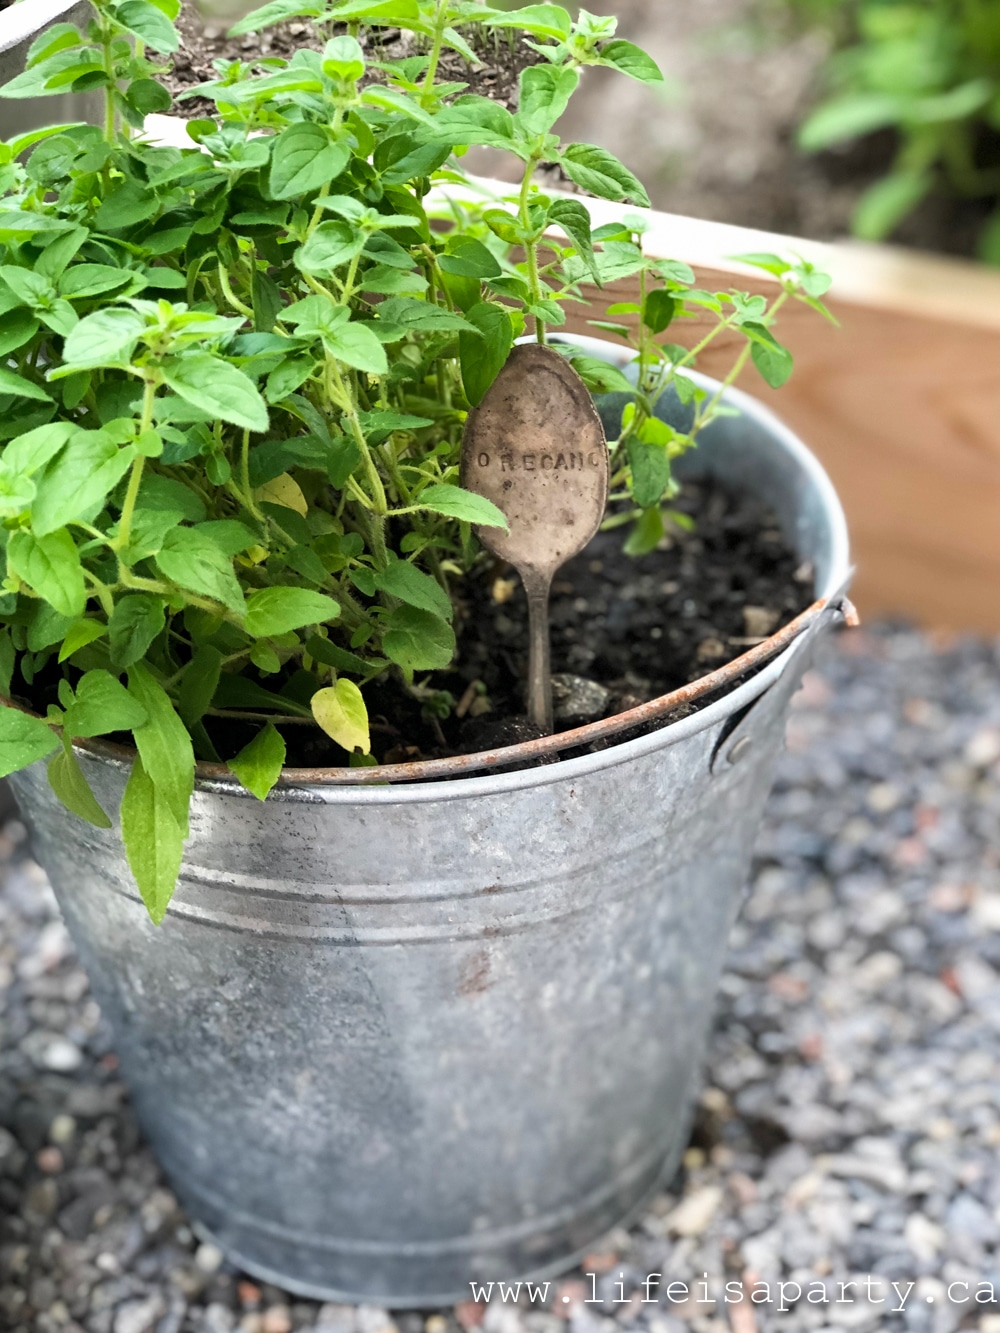 oregano growing in a galvanized bucket